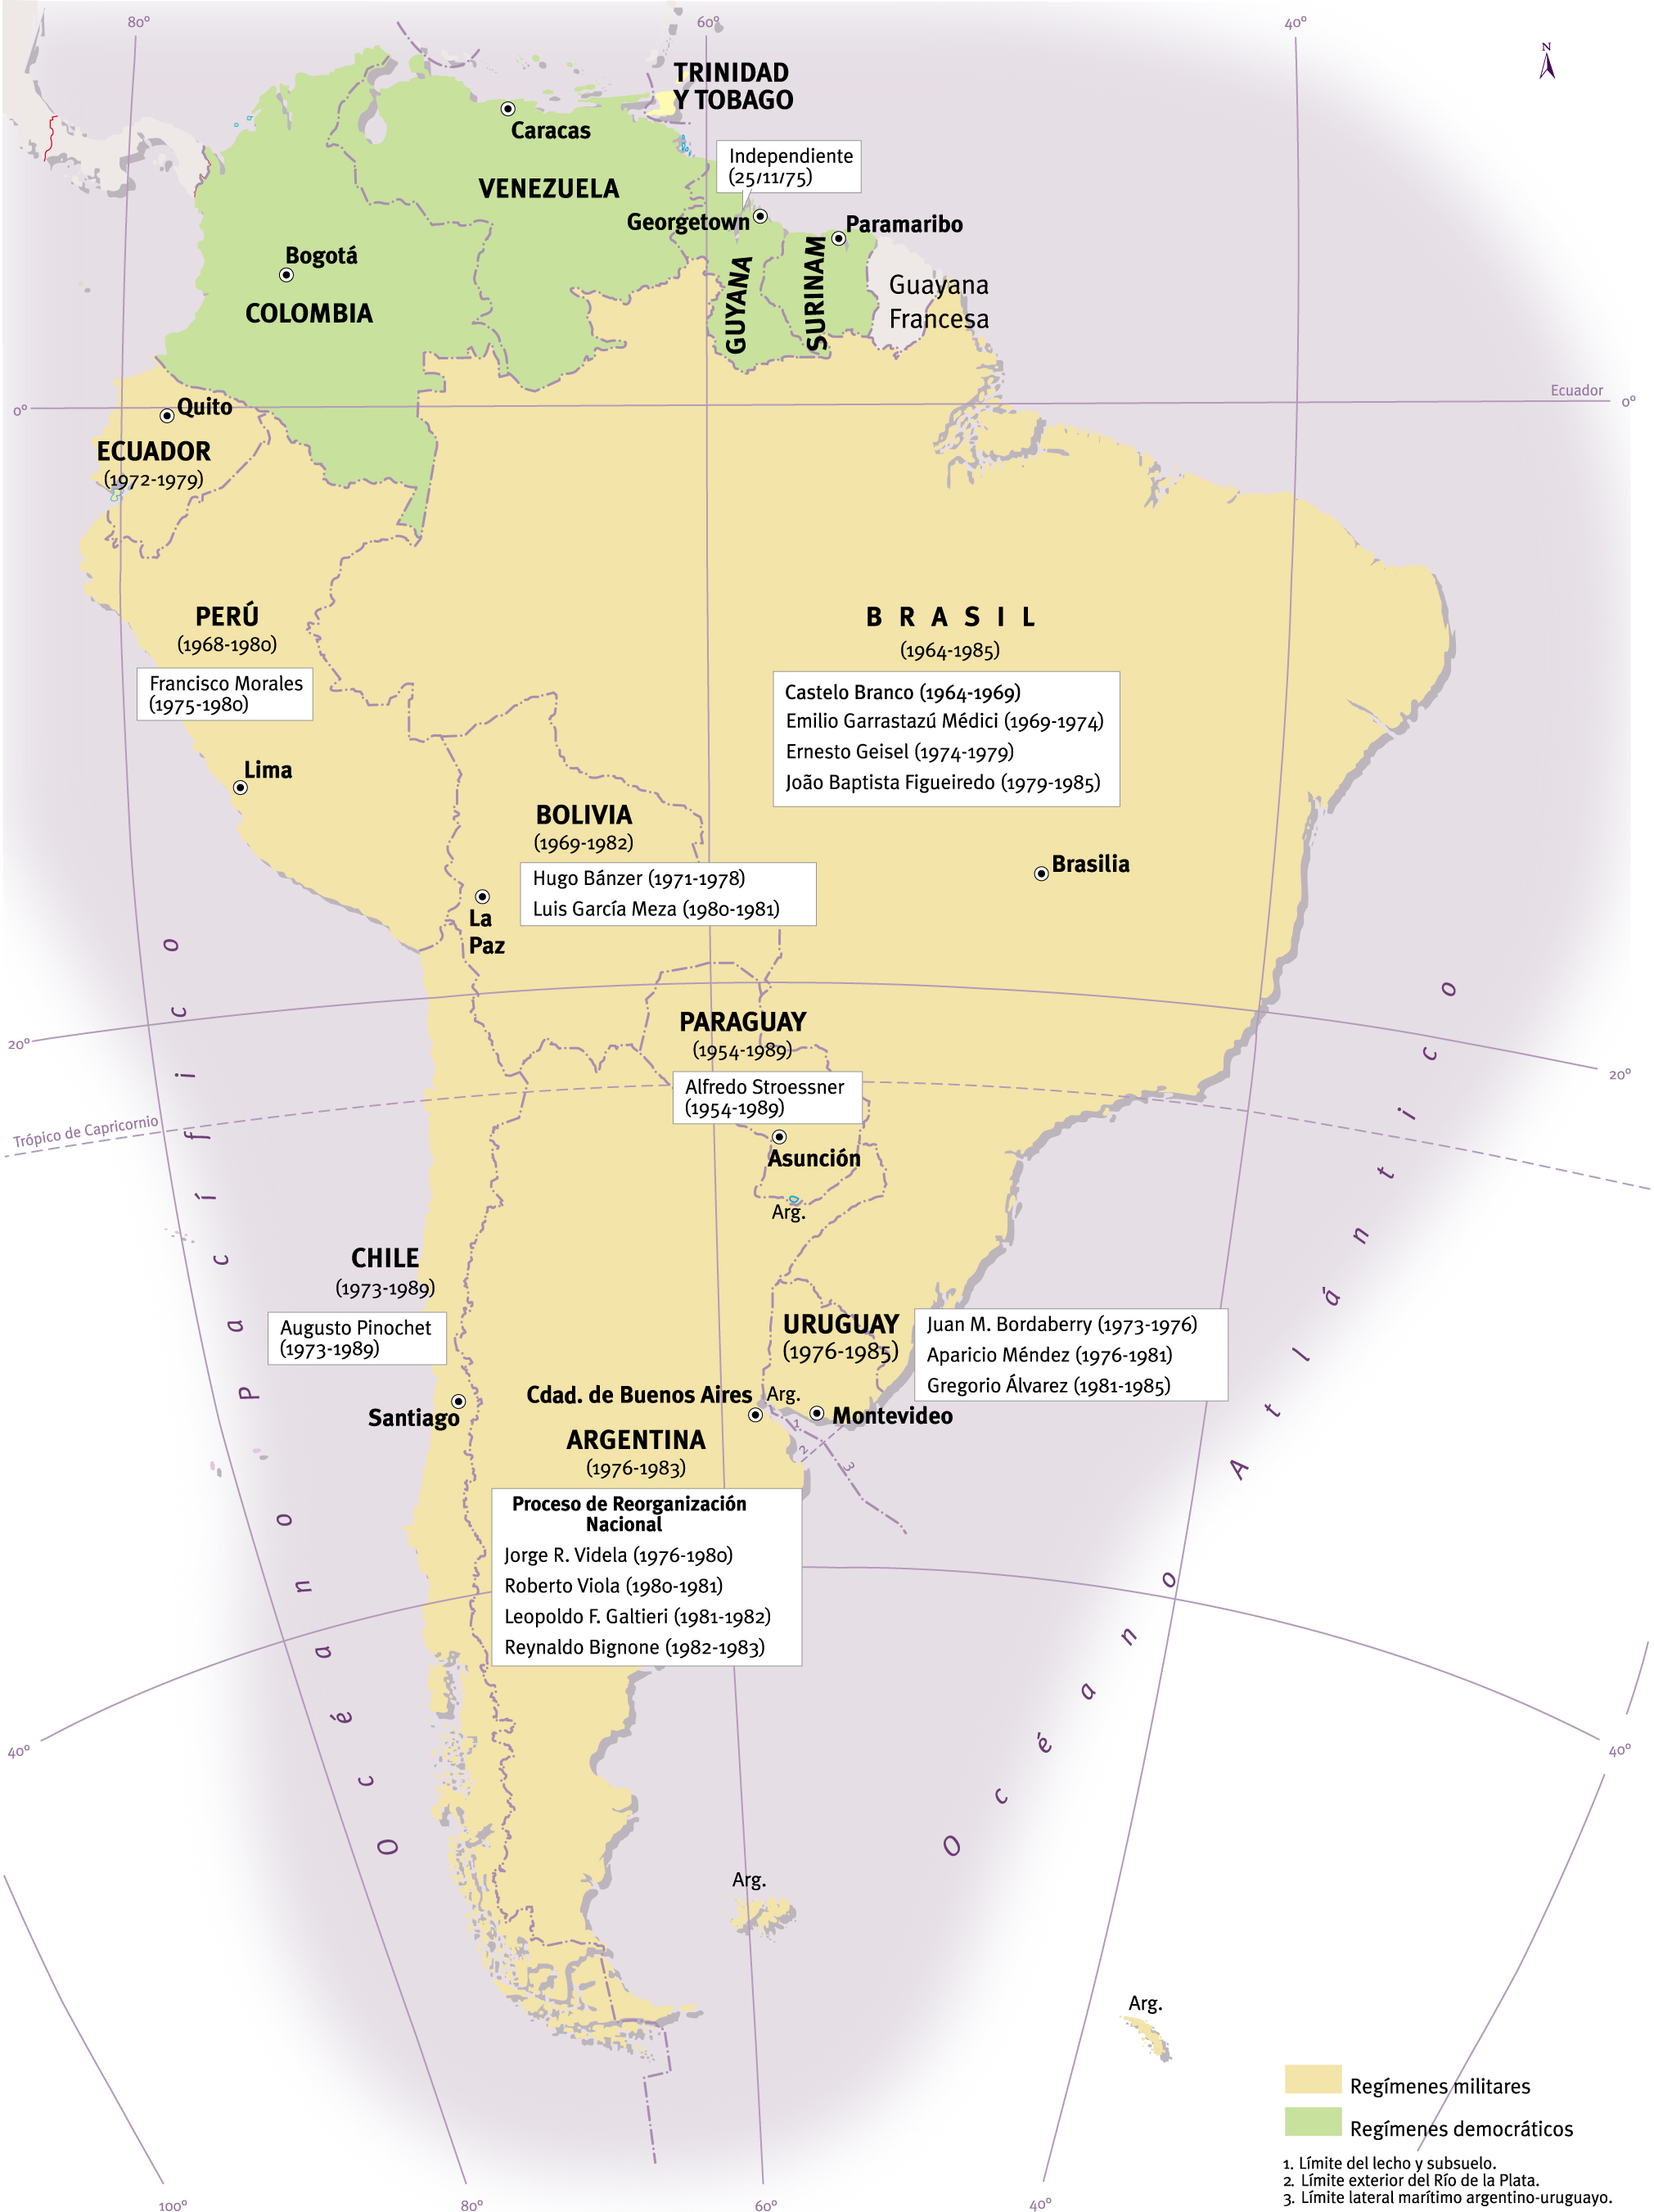 Terrorismo de Estado en América del Sur